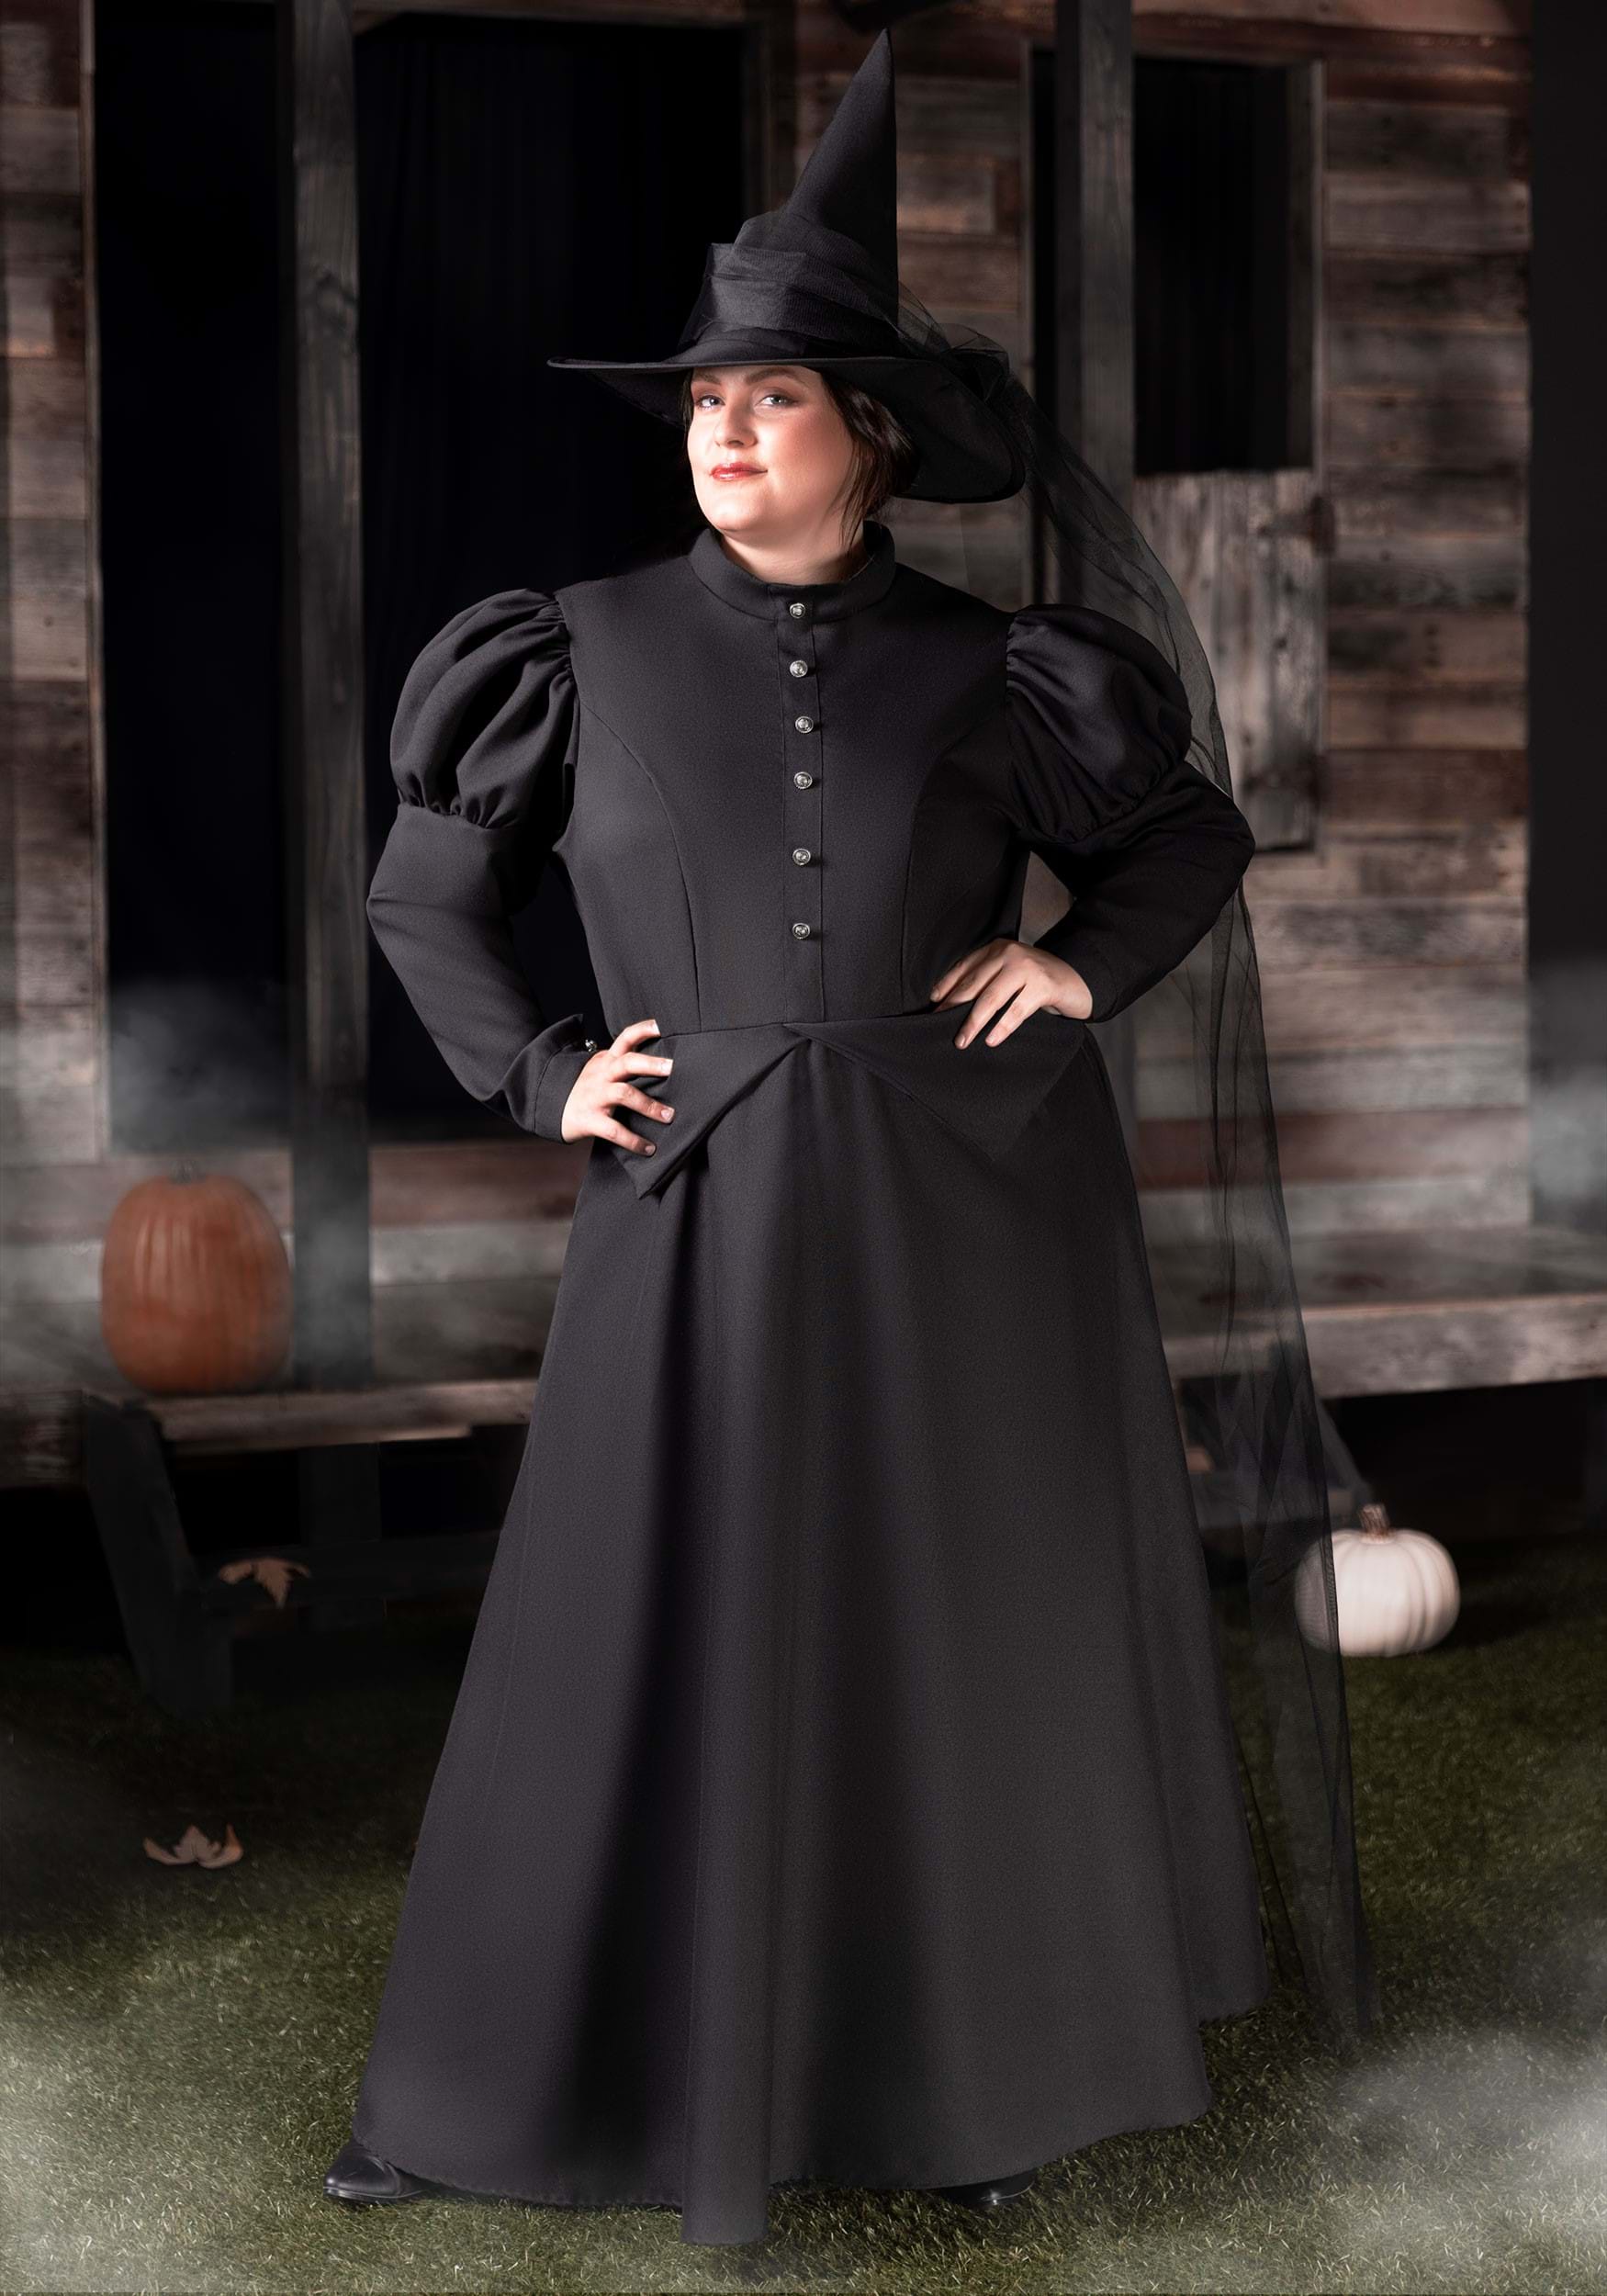 Plus Size Witch Costumes! Plus Size Gothic Wear! 0x 1x 2x 3x 4x 5x